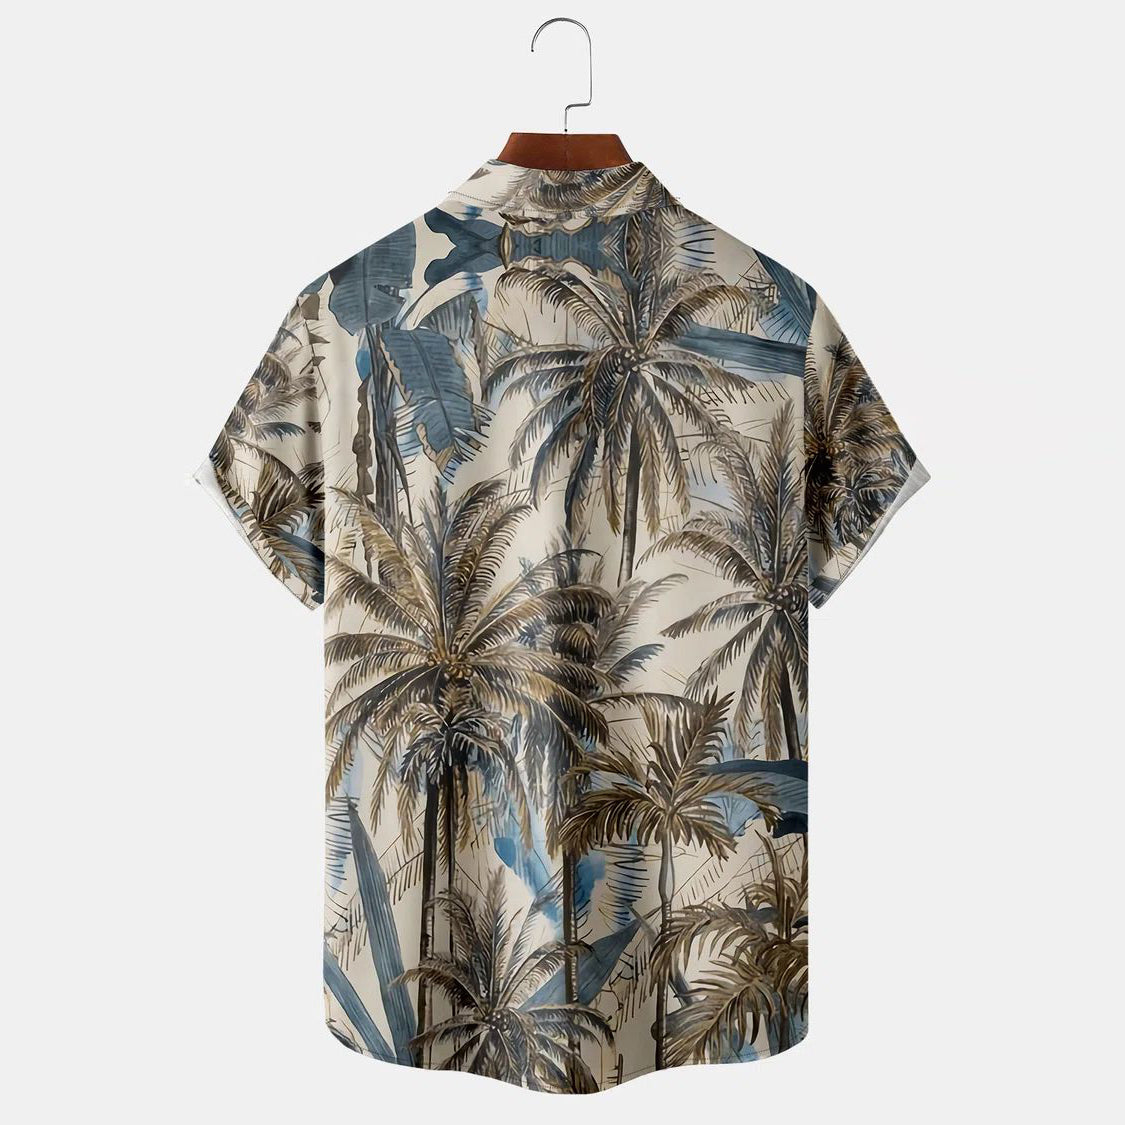 Retro fashion brand coconut tree print shirt